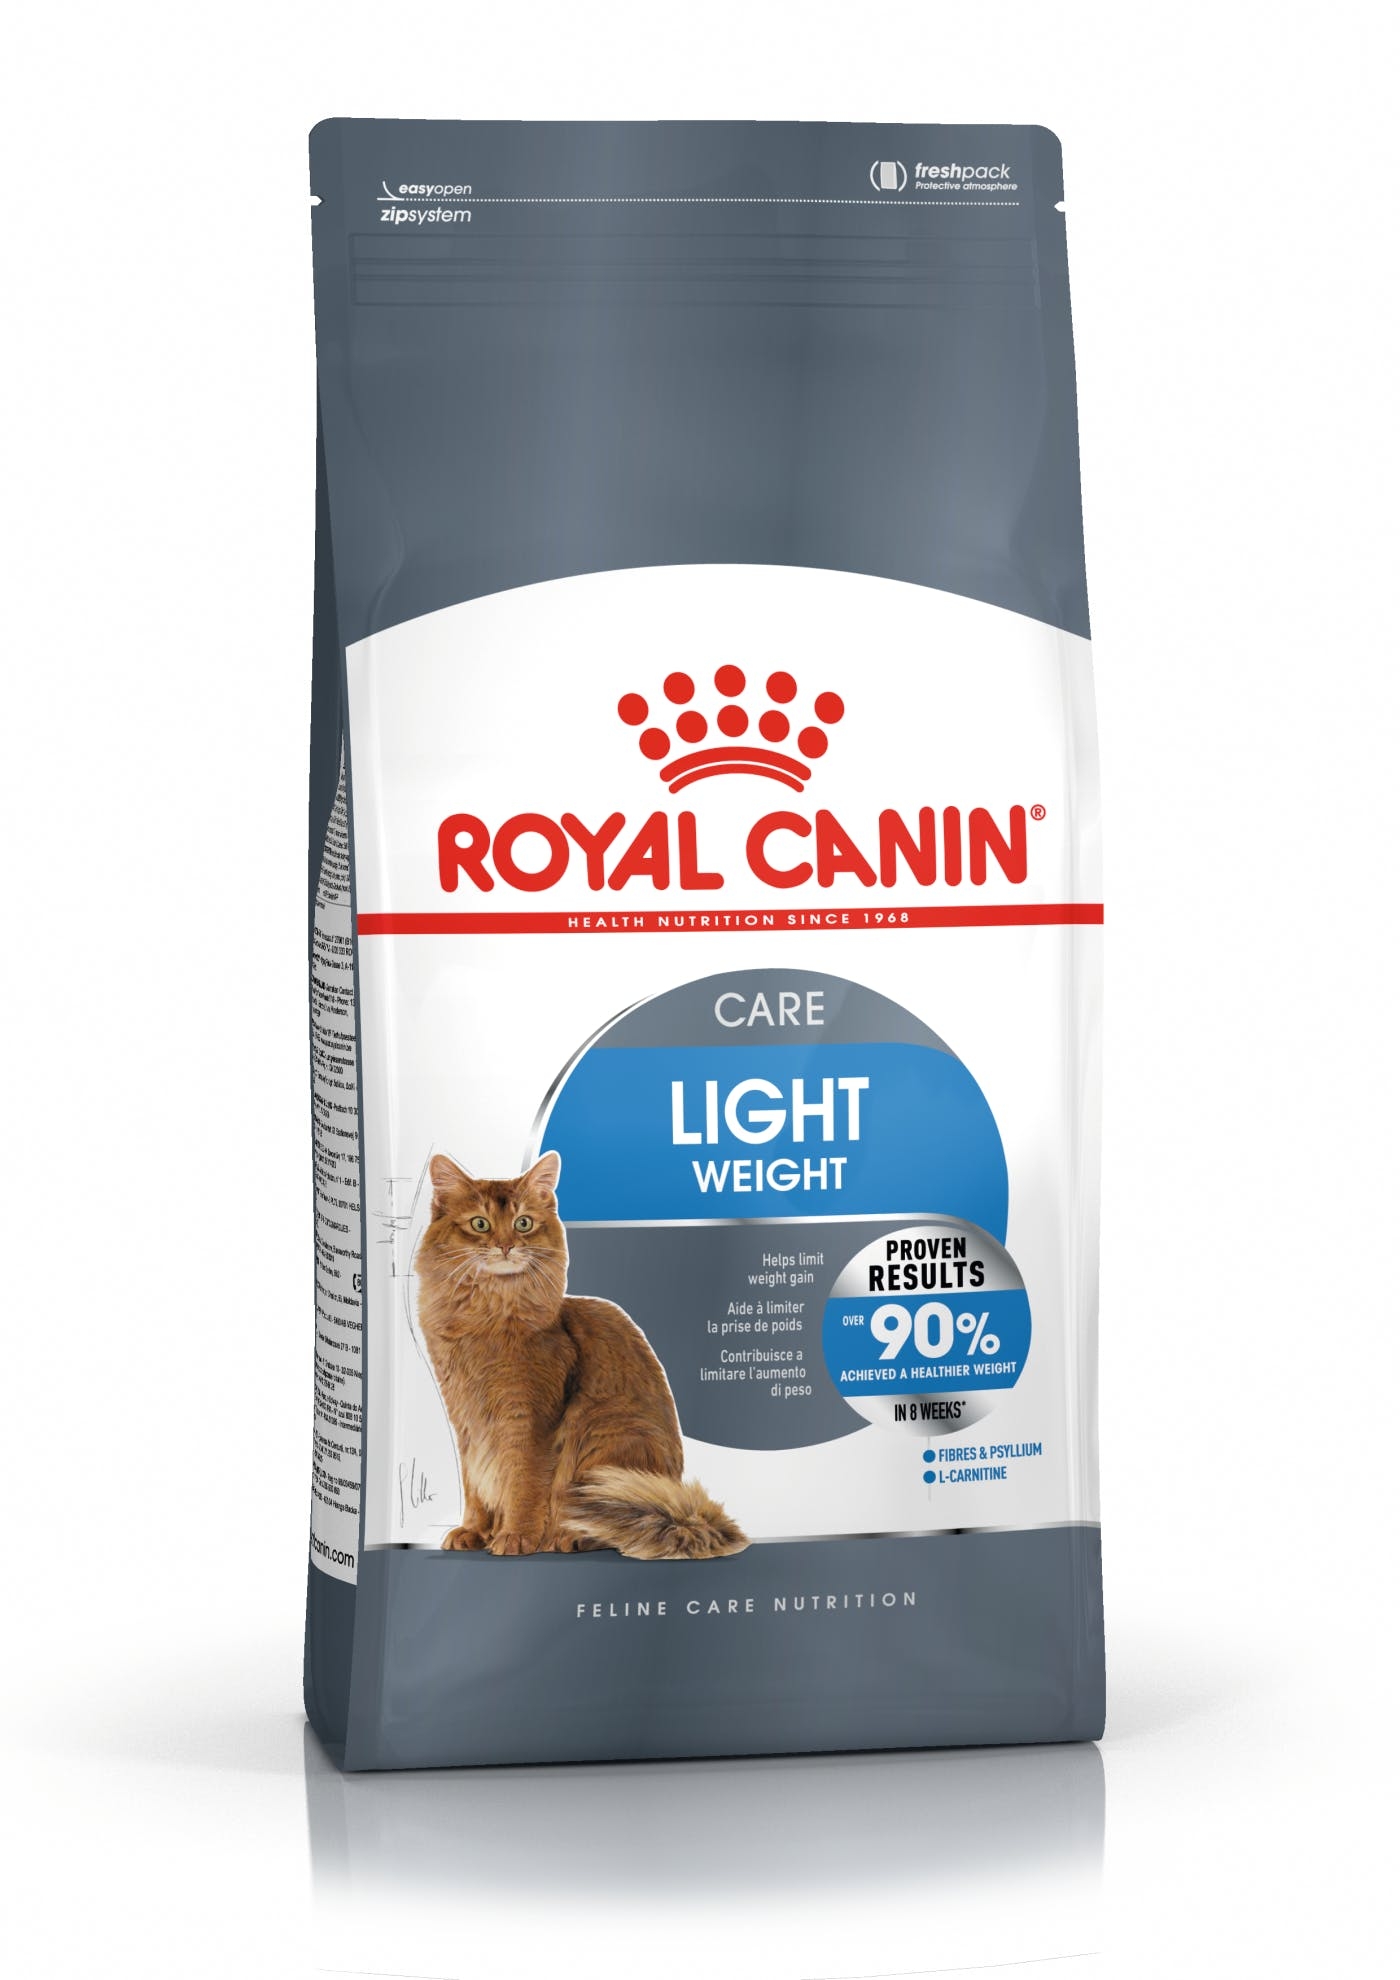 Billede af Royal Canin Light Weight Care. Til den voksne kat med tendens til overvægt